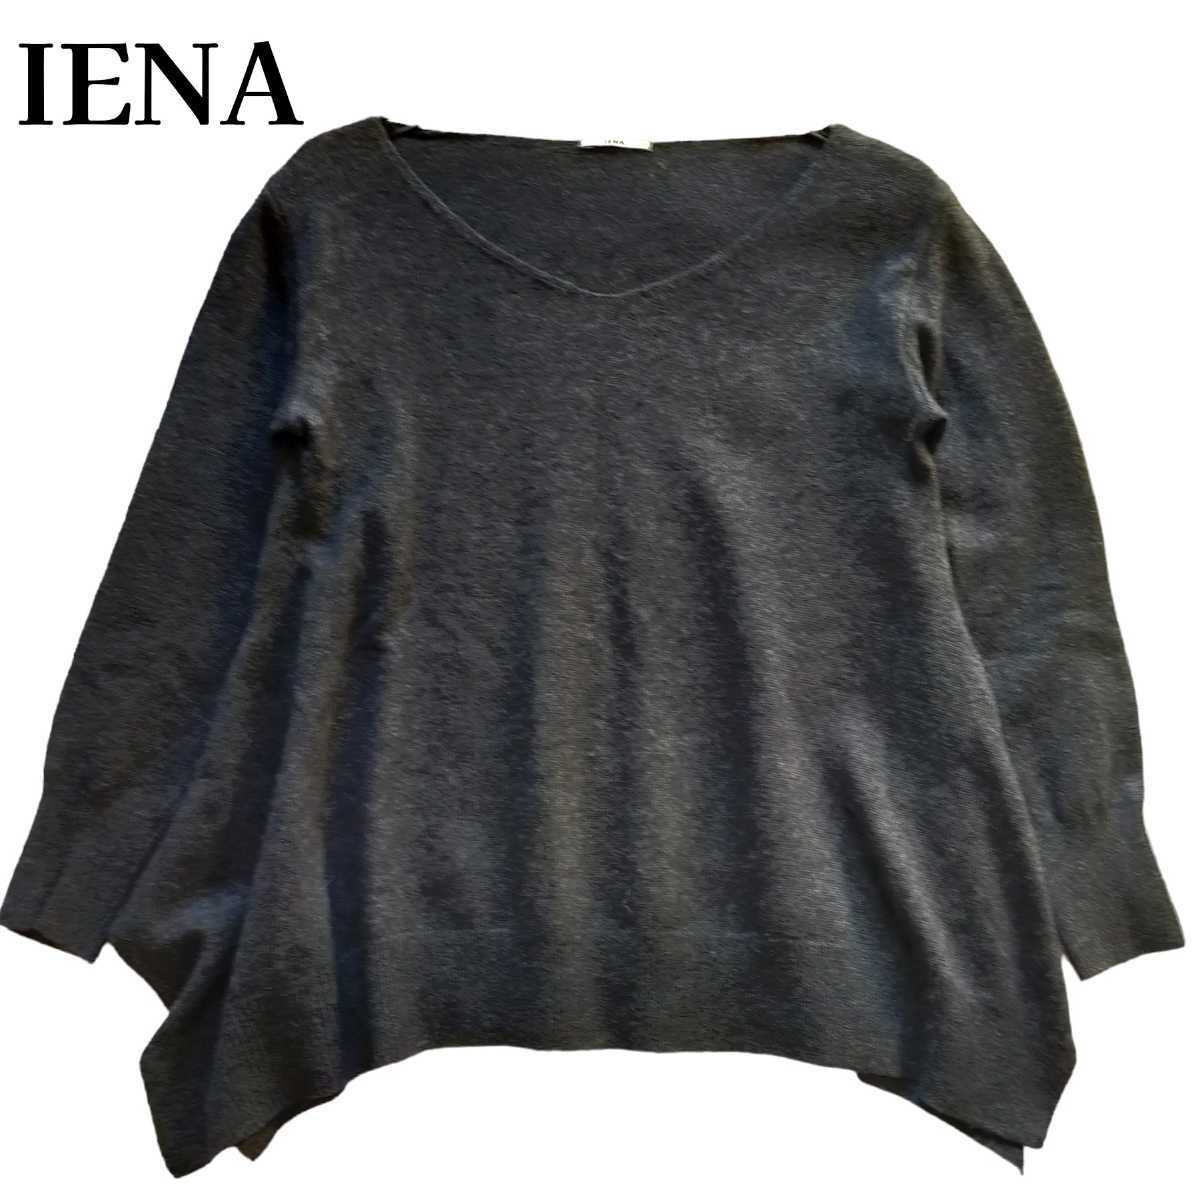 IENA★イエナ 変形 ニットセーター ニットプルオーバー ウール100% 薄手 長袖 チャコールグレー 濃灰色 大きめサイズ フリーサイズ